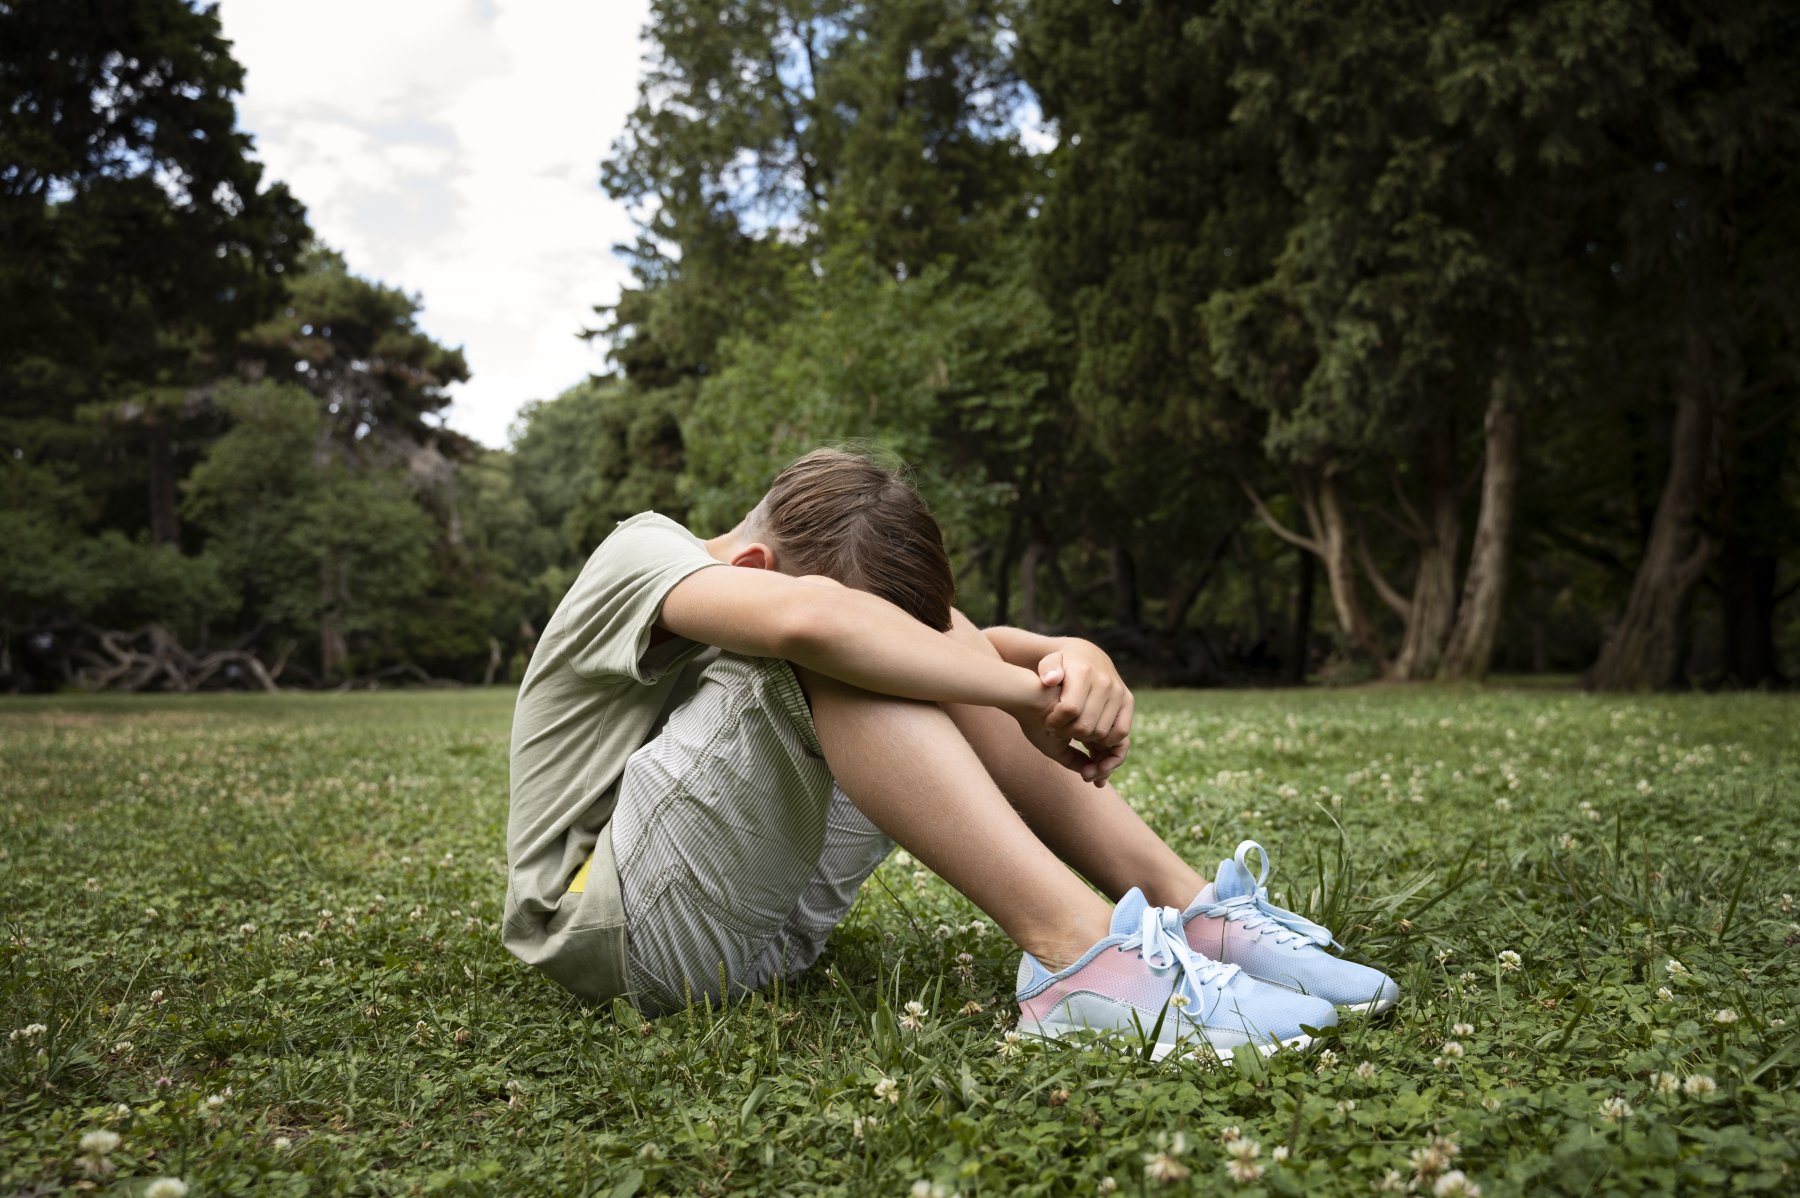 Психолог объяснила, как распознать склонность к деструктивному поведению у подростков